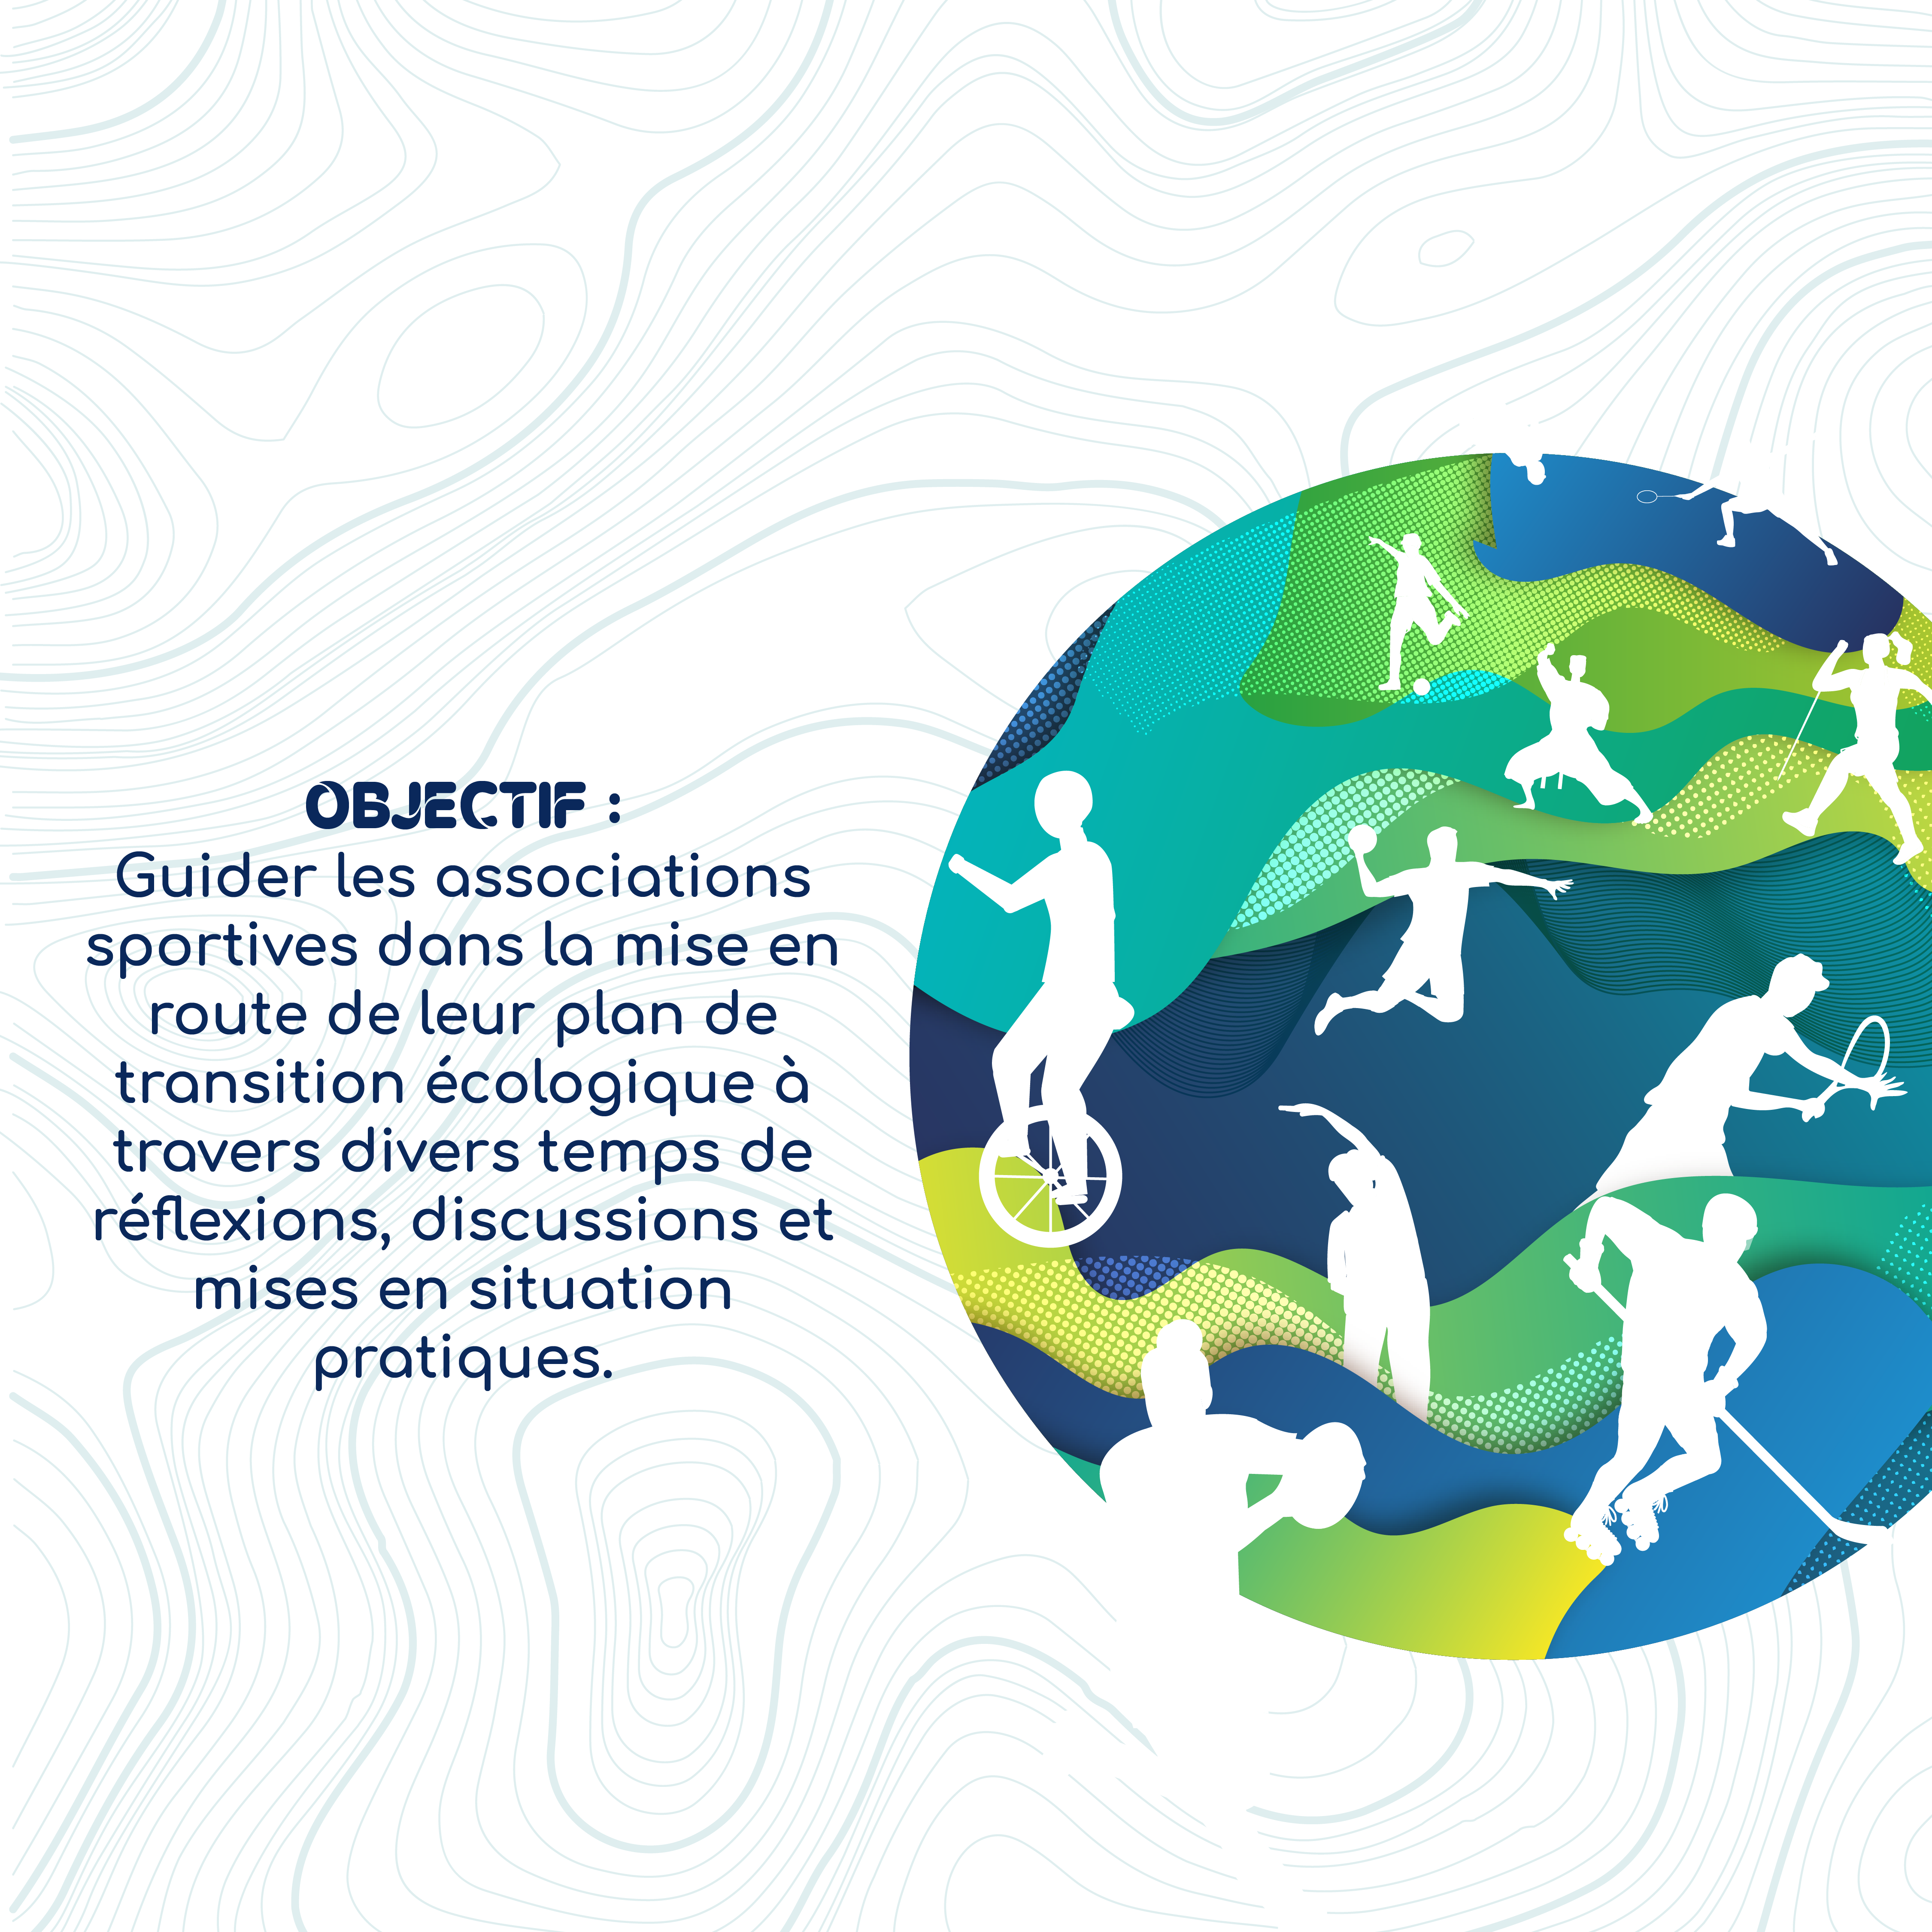 Objectif : guider les associations sportives dans la mise en route de leur plan de transition écologique à travers divers temps de réflexions, discussions et mises en situation pratiques.